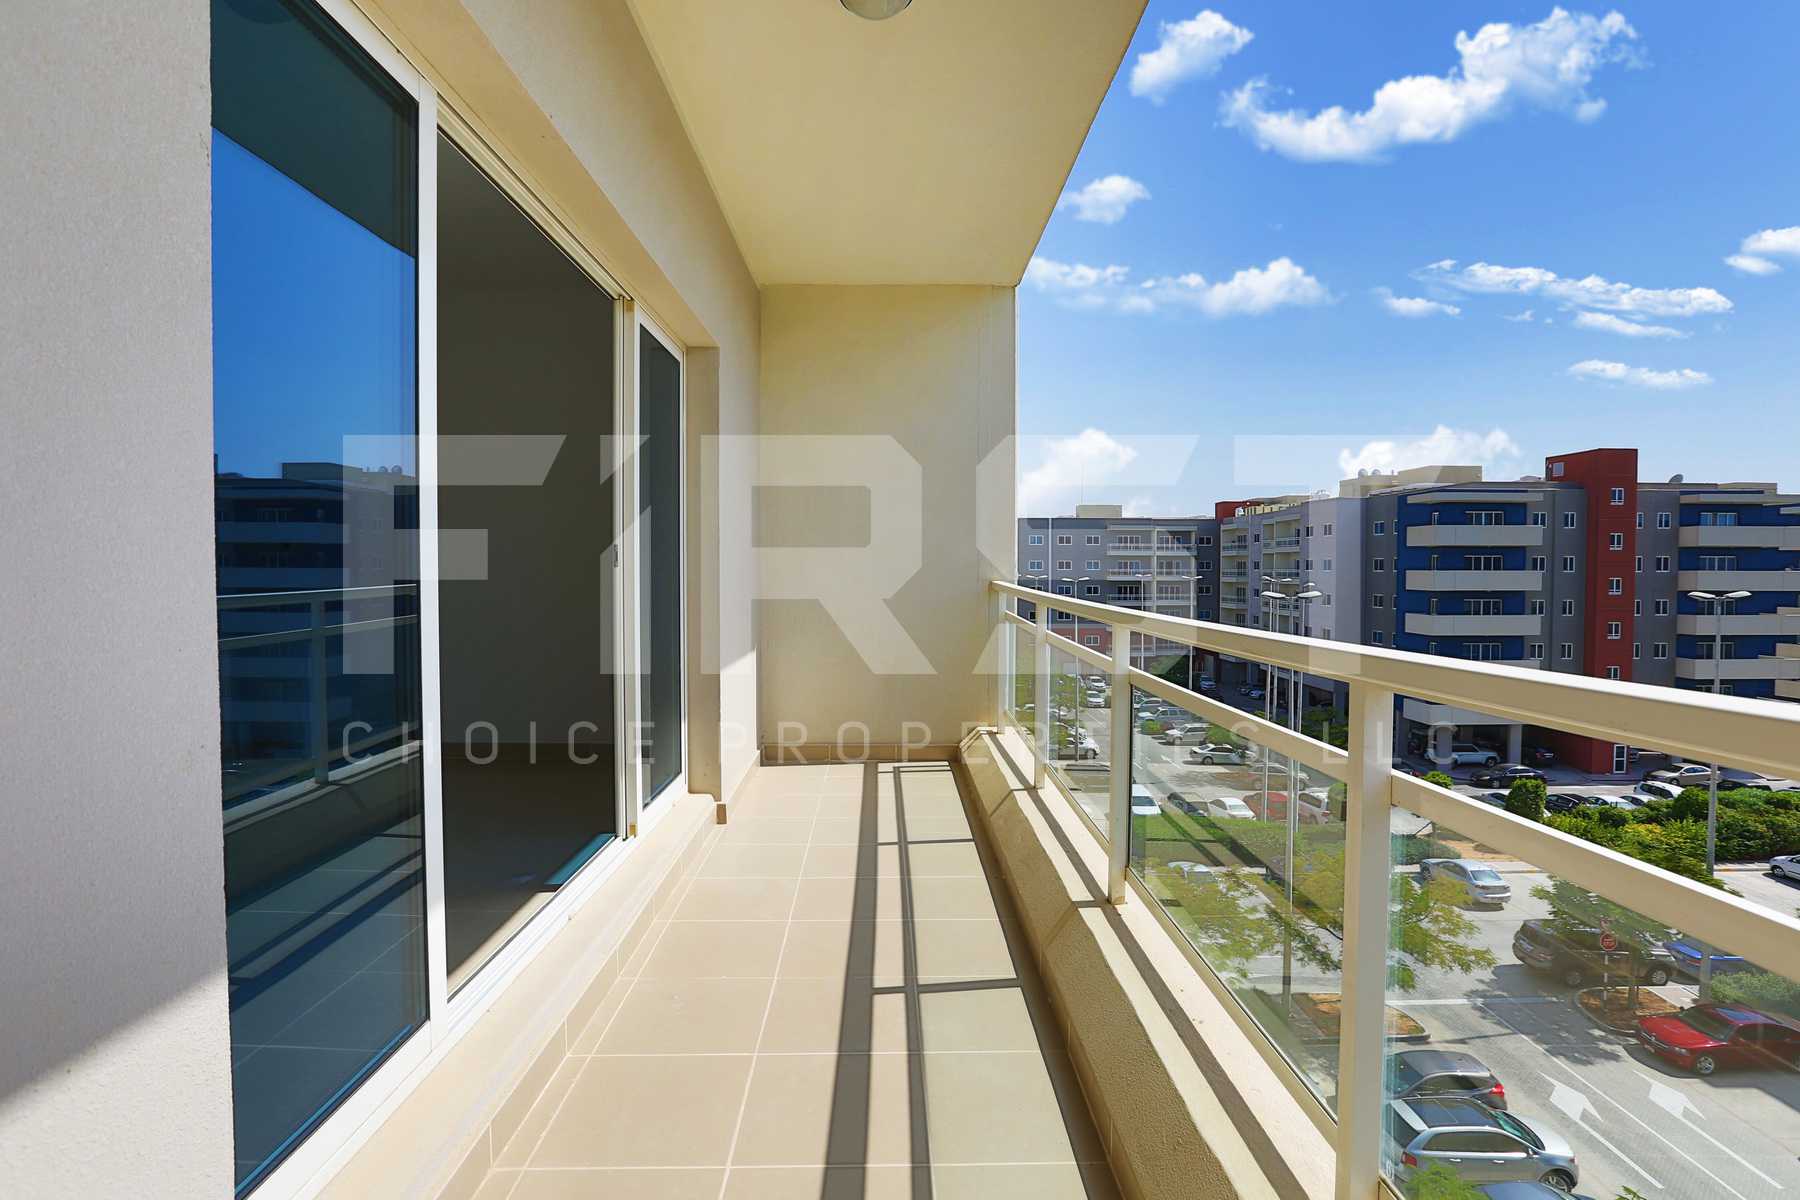 Internal Photo of 2 Bedroom Apartment Type B in Al Reef Downtown Al Reef Abu Dhabi UAE 114 sq.m 1227 (21) - Copy.jpg